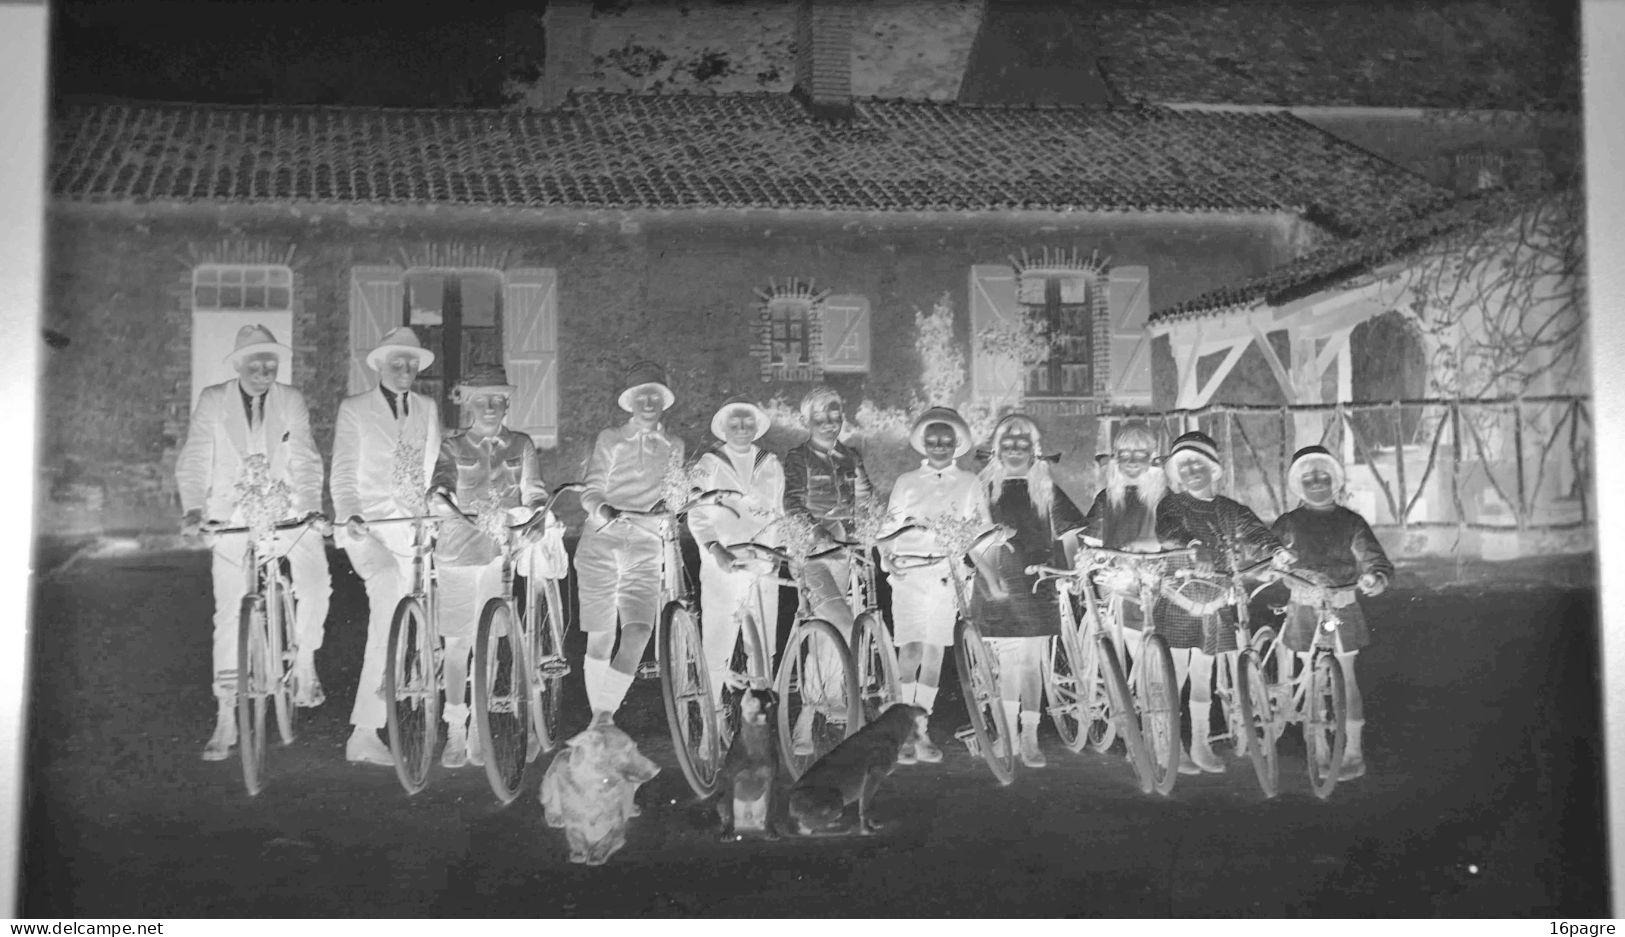 LOT DE TROIS GRANDES PLAQUES DE VERRE. GROUPE DE JEUNES CYCLISTES. MACHECOUL.CHIENS, LOIRE-ATLANTIQUE. 1950 - Glasplaten